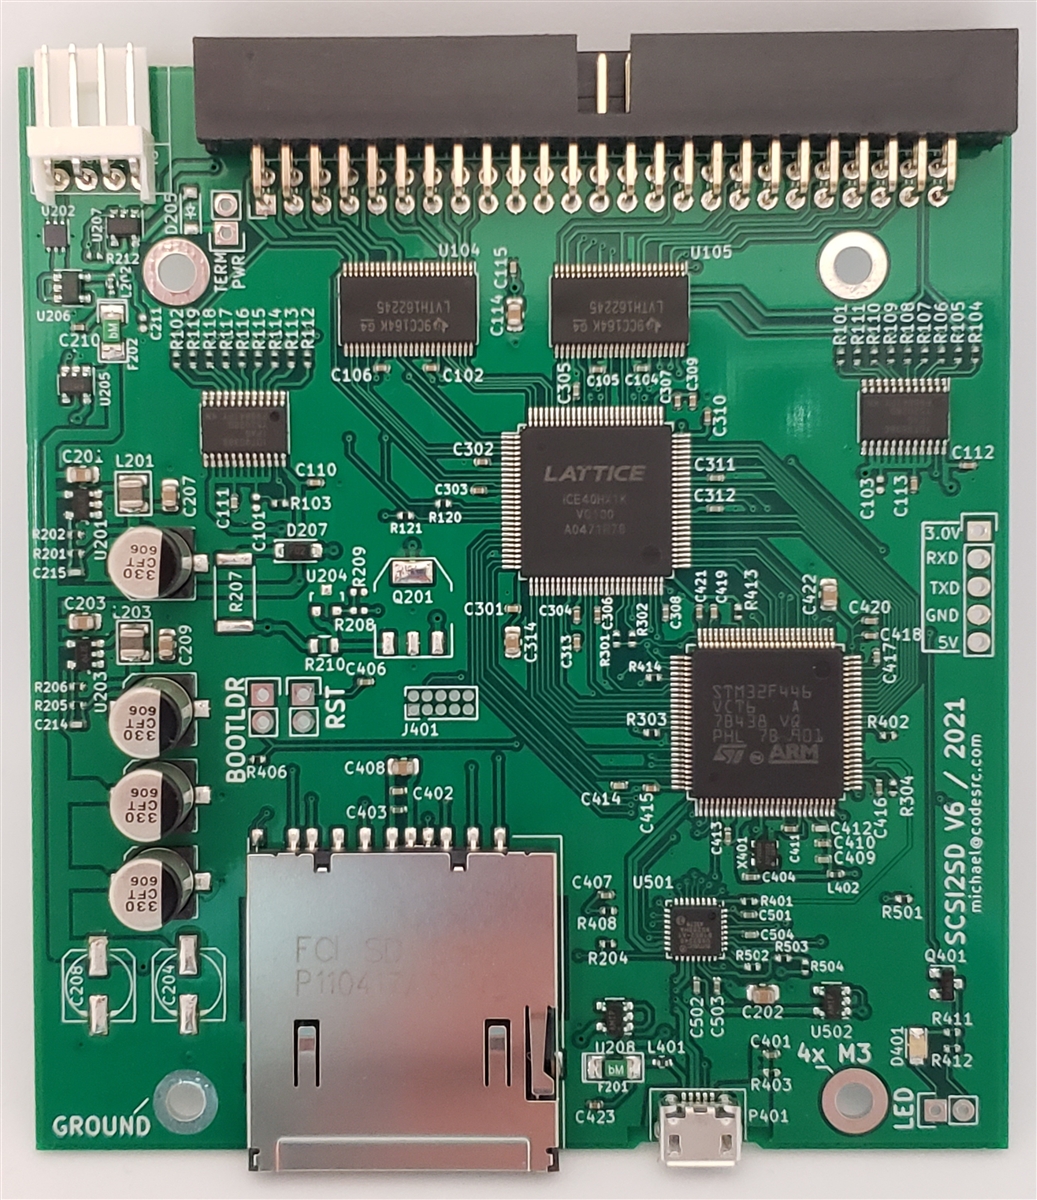 The SCSI2SD Rev 6.0